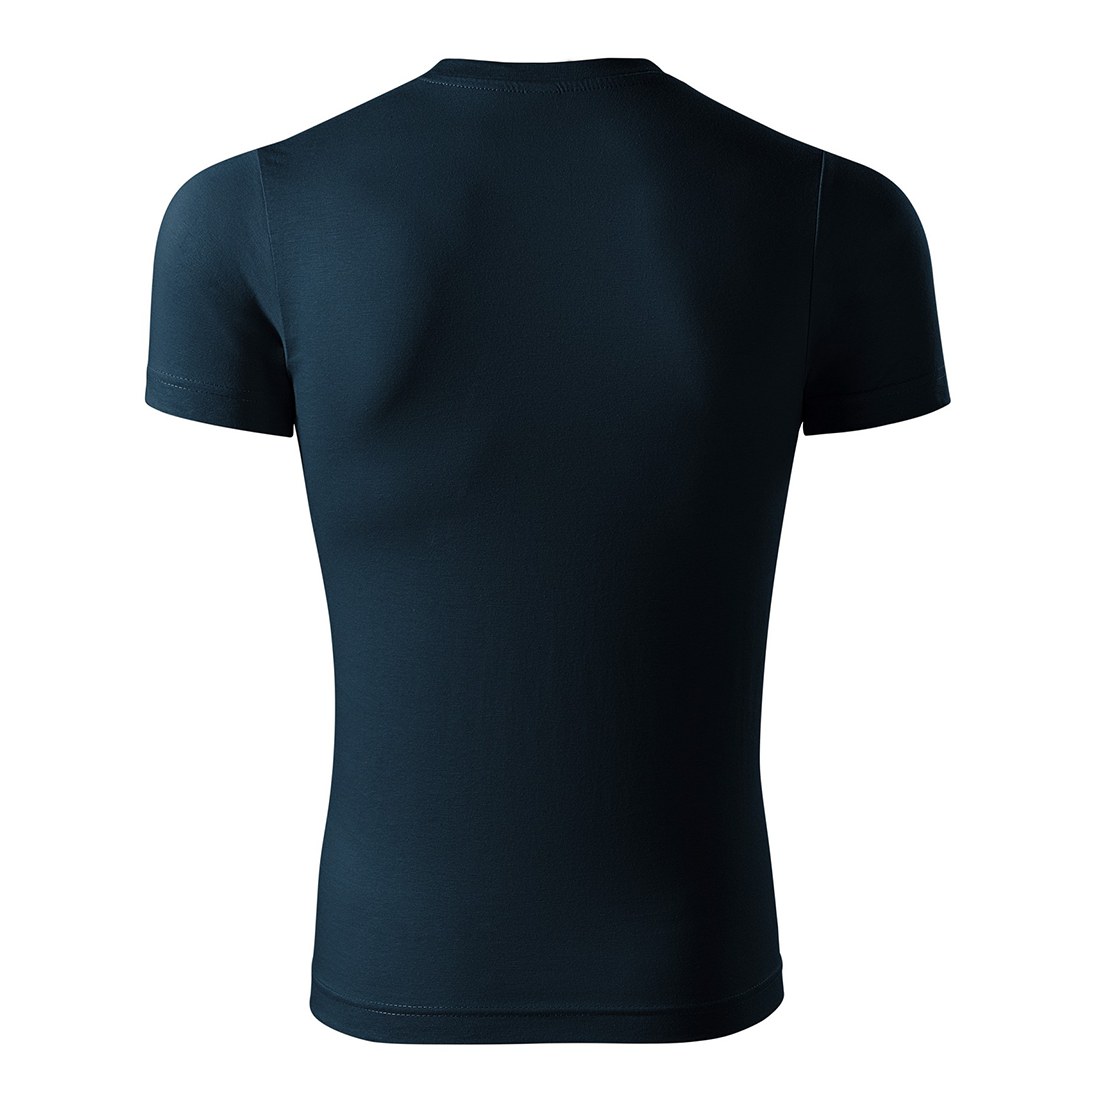 Unisex Cotton T-shirt - Safetywear